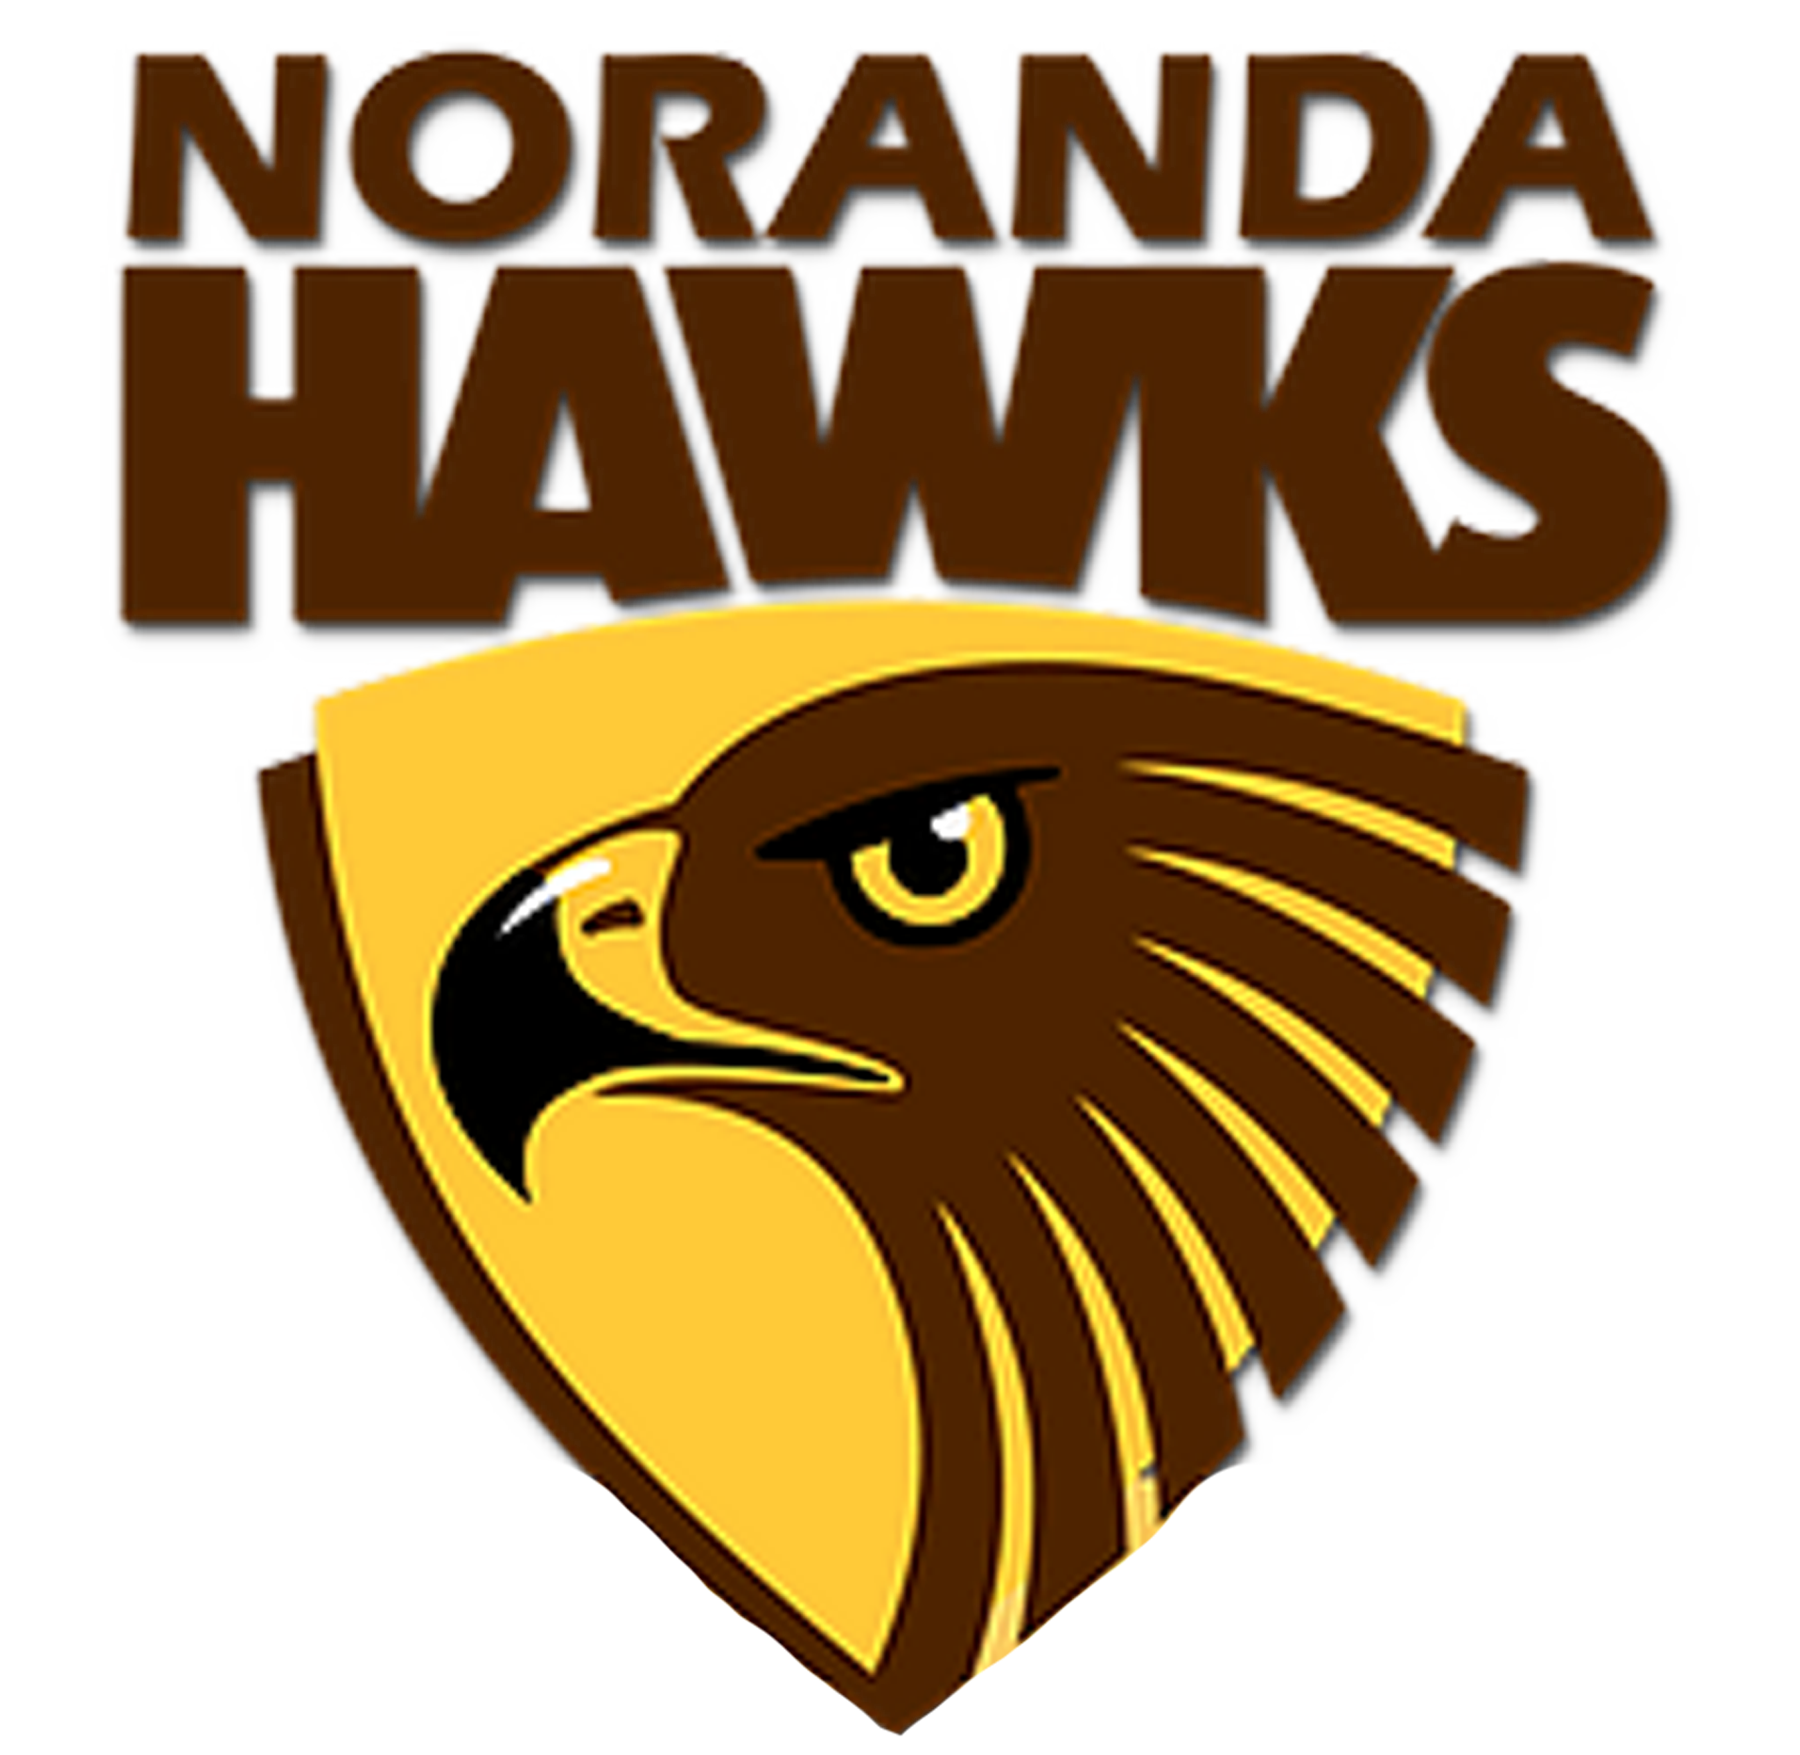 Noranda Football Club